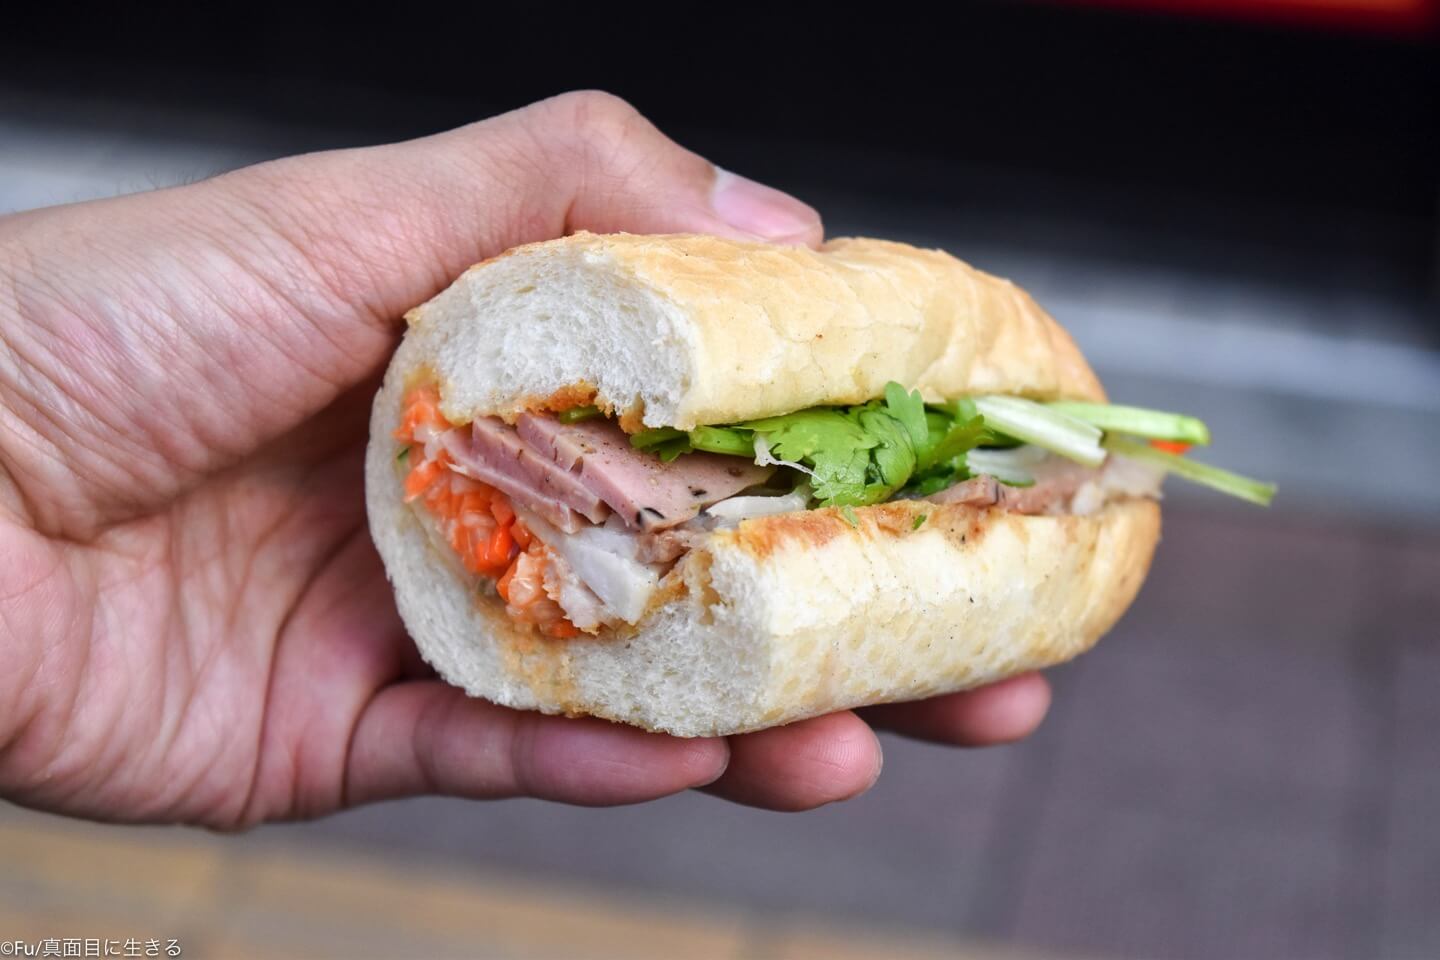 高田馬場「バインミーシンチャオ」のサンドイッチは本場ベトナム人が認める美味しさ! テイクアウト可能